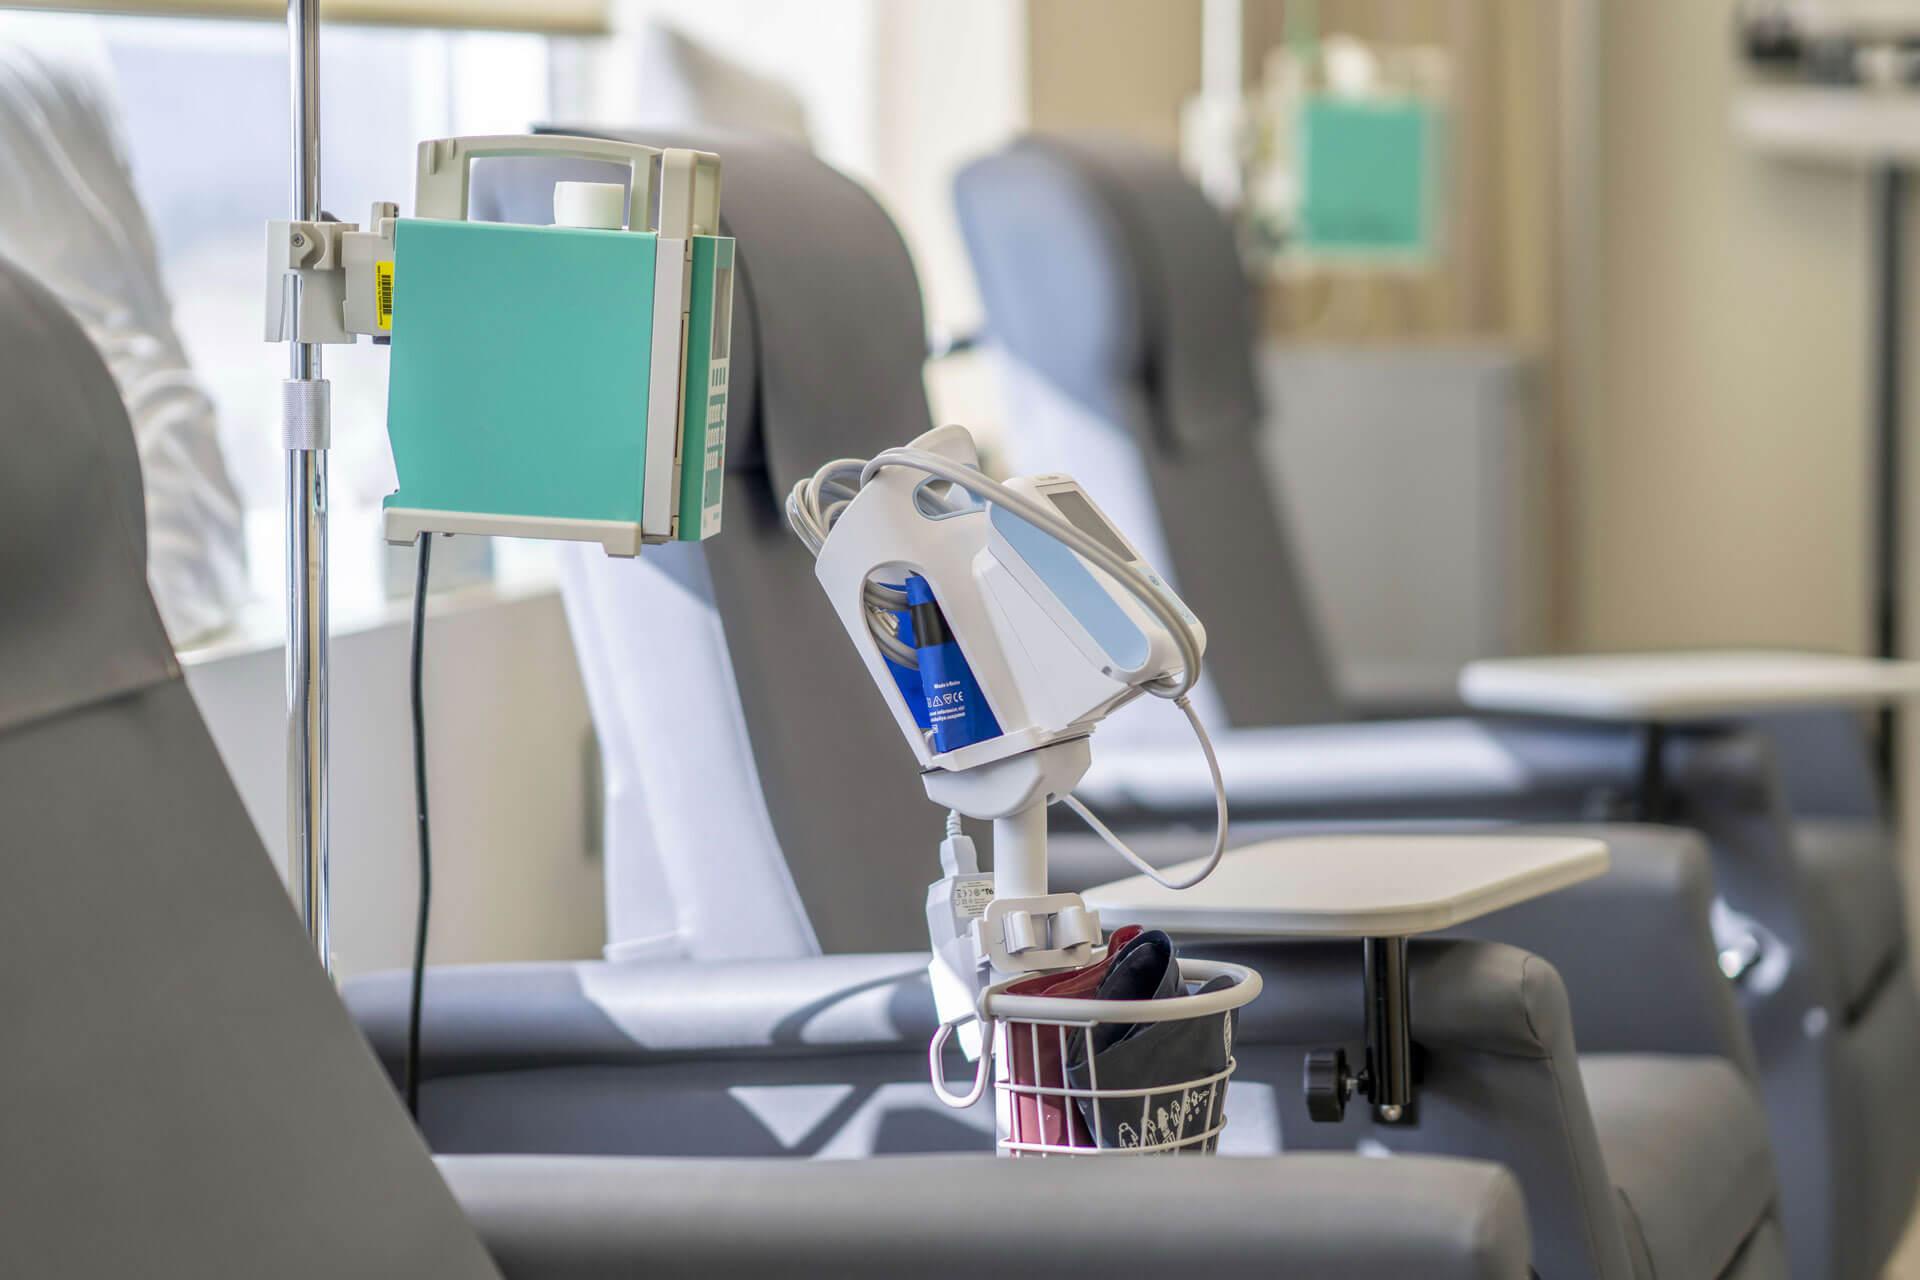 Ein Foto, das einen leeren Chemotherapie-Behandlungsraum zeigt. Der Raum verfügt über Sessel und medizinische Geräte und Zubehör.